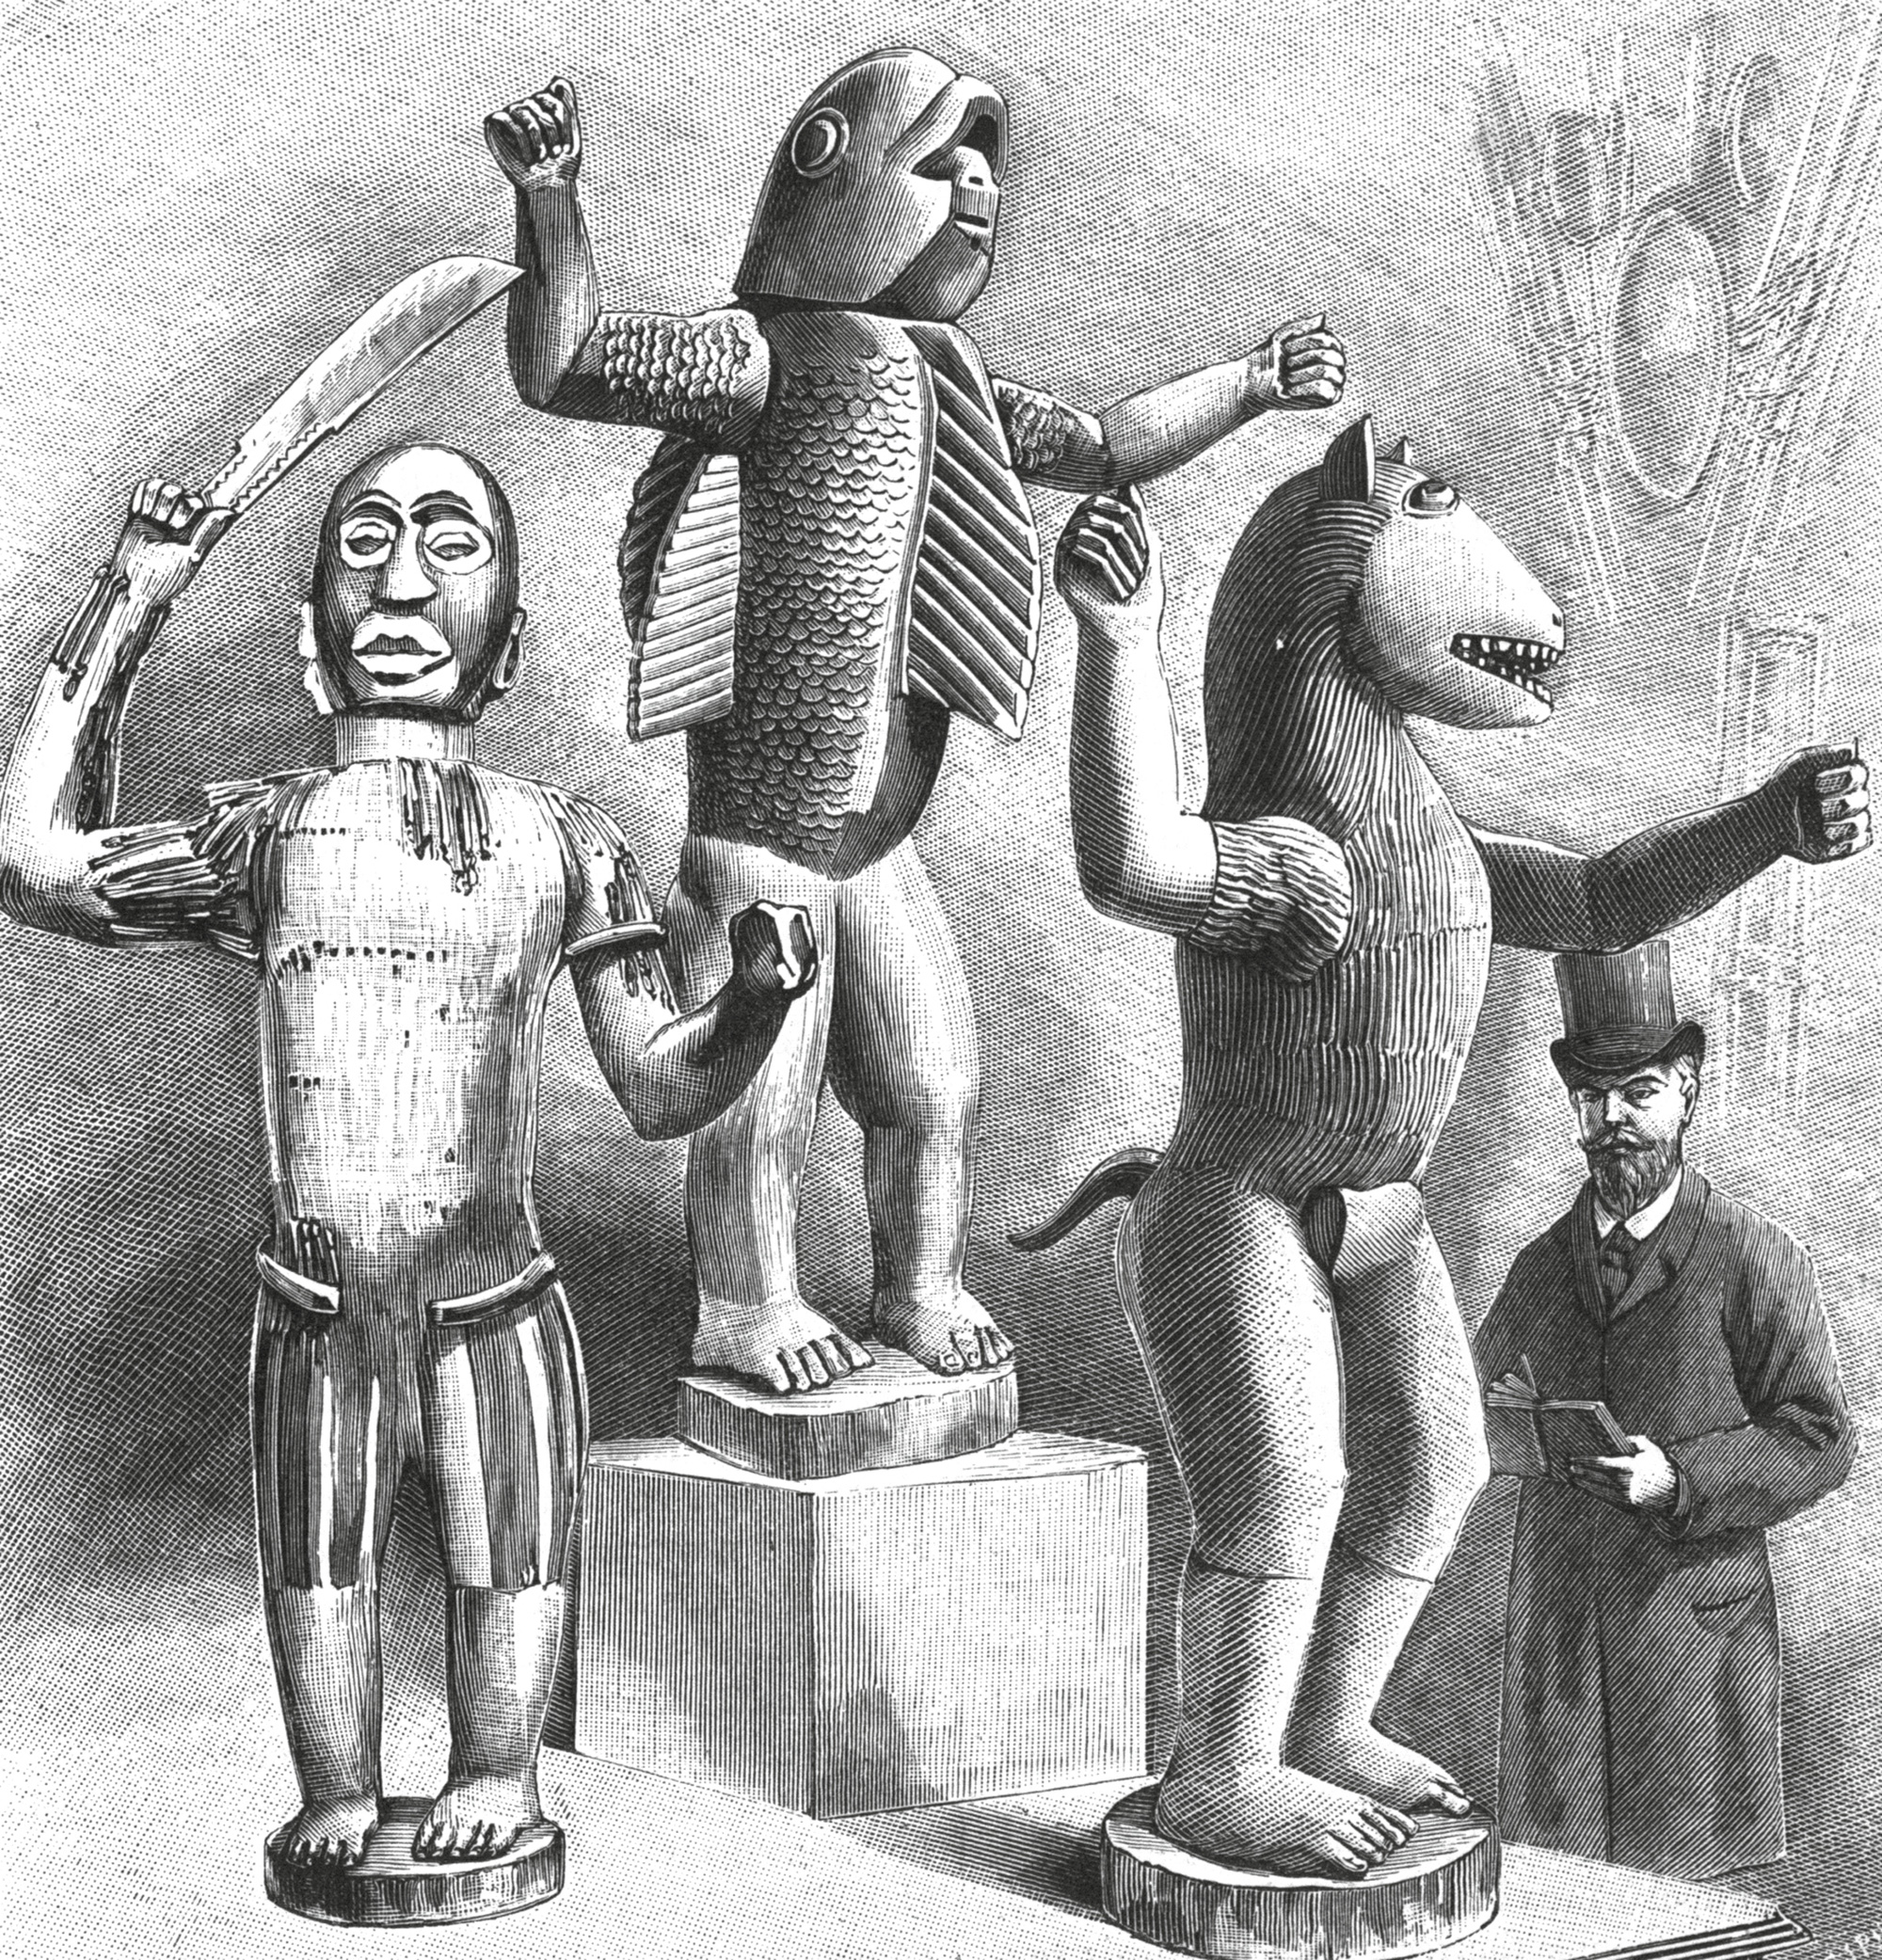 Bocio depicting the Dahomean kings Guezo, Glele, and Béhanzin exhibited in Paris at the Musée d’Ethnographie du Trocadéro. From La Nature, vol. 22, no. 1086, 1894. Courtesy Conservatoire numérique des arts et métiers.